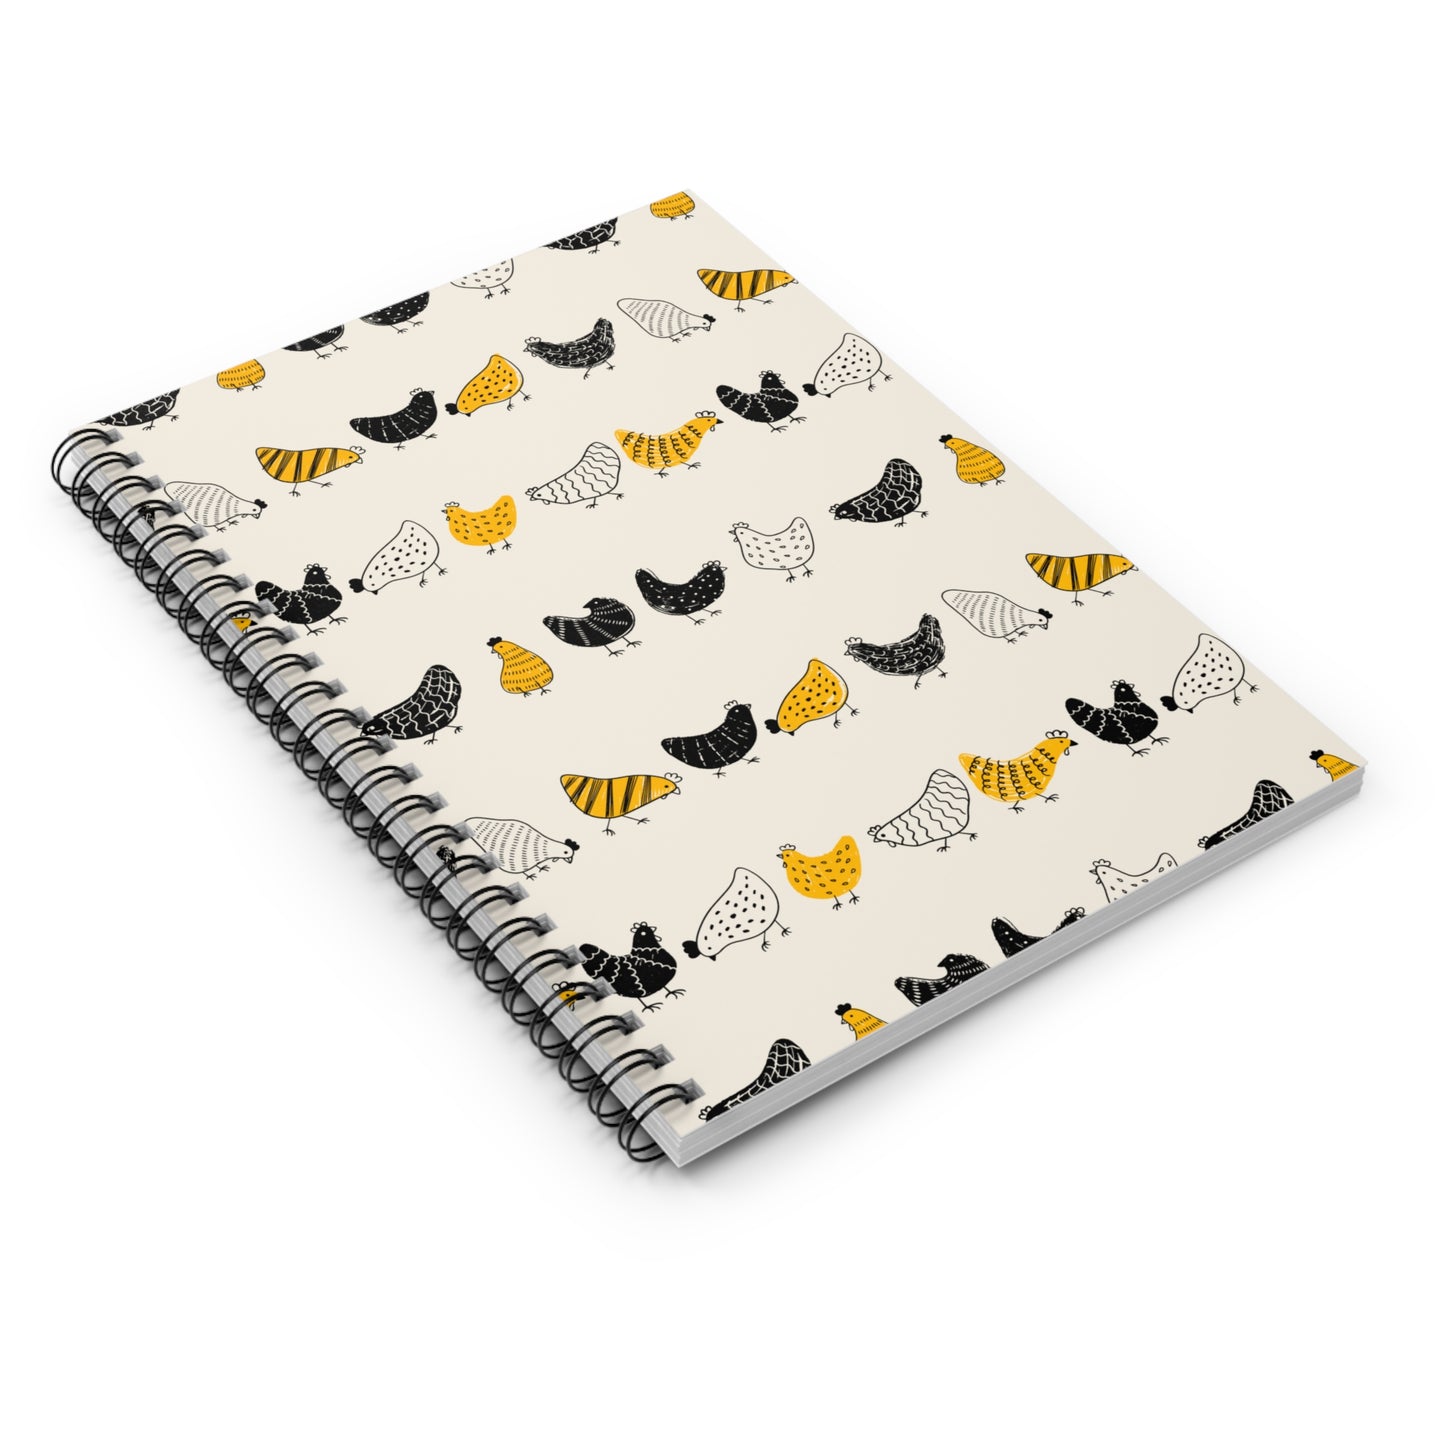 Chickens Spiral Notebook